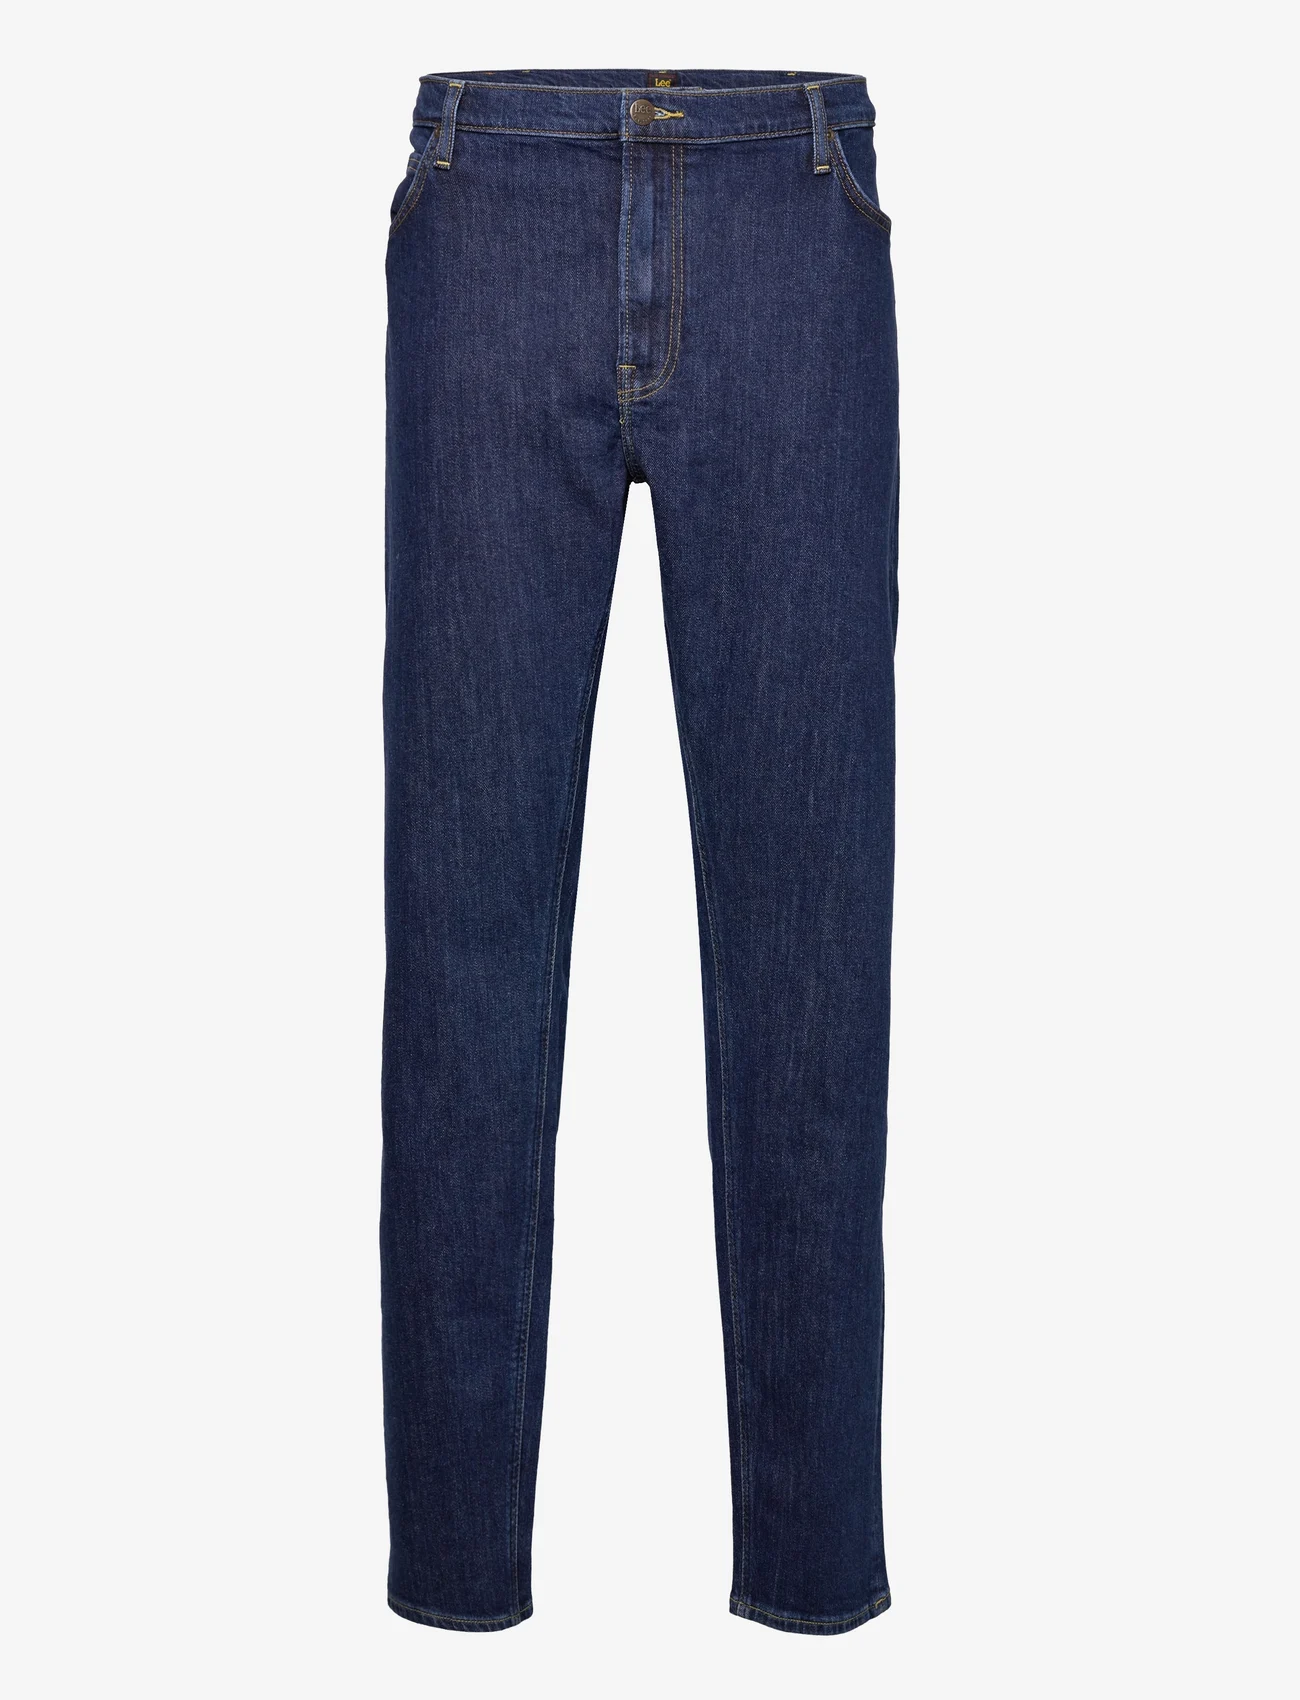 Lee Jeans - DAREN ZIP FLY - regular jeans - deep dark stone - 1